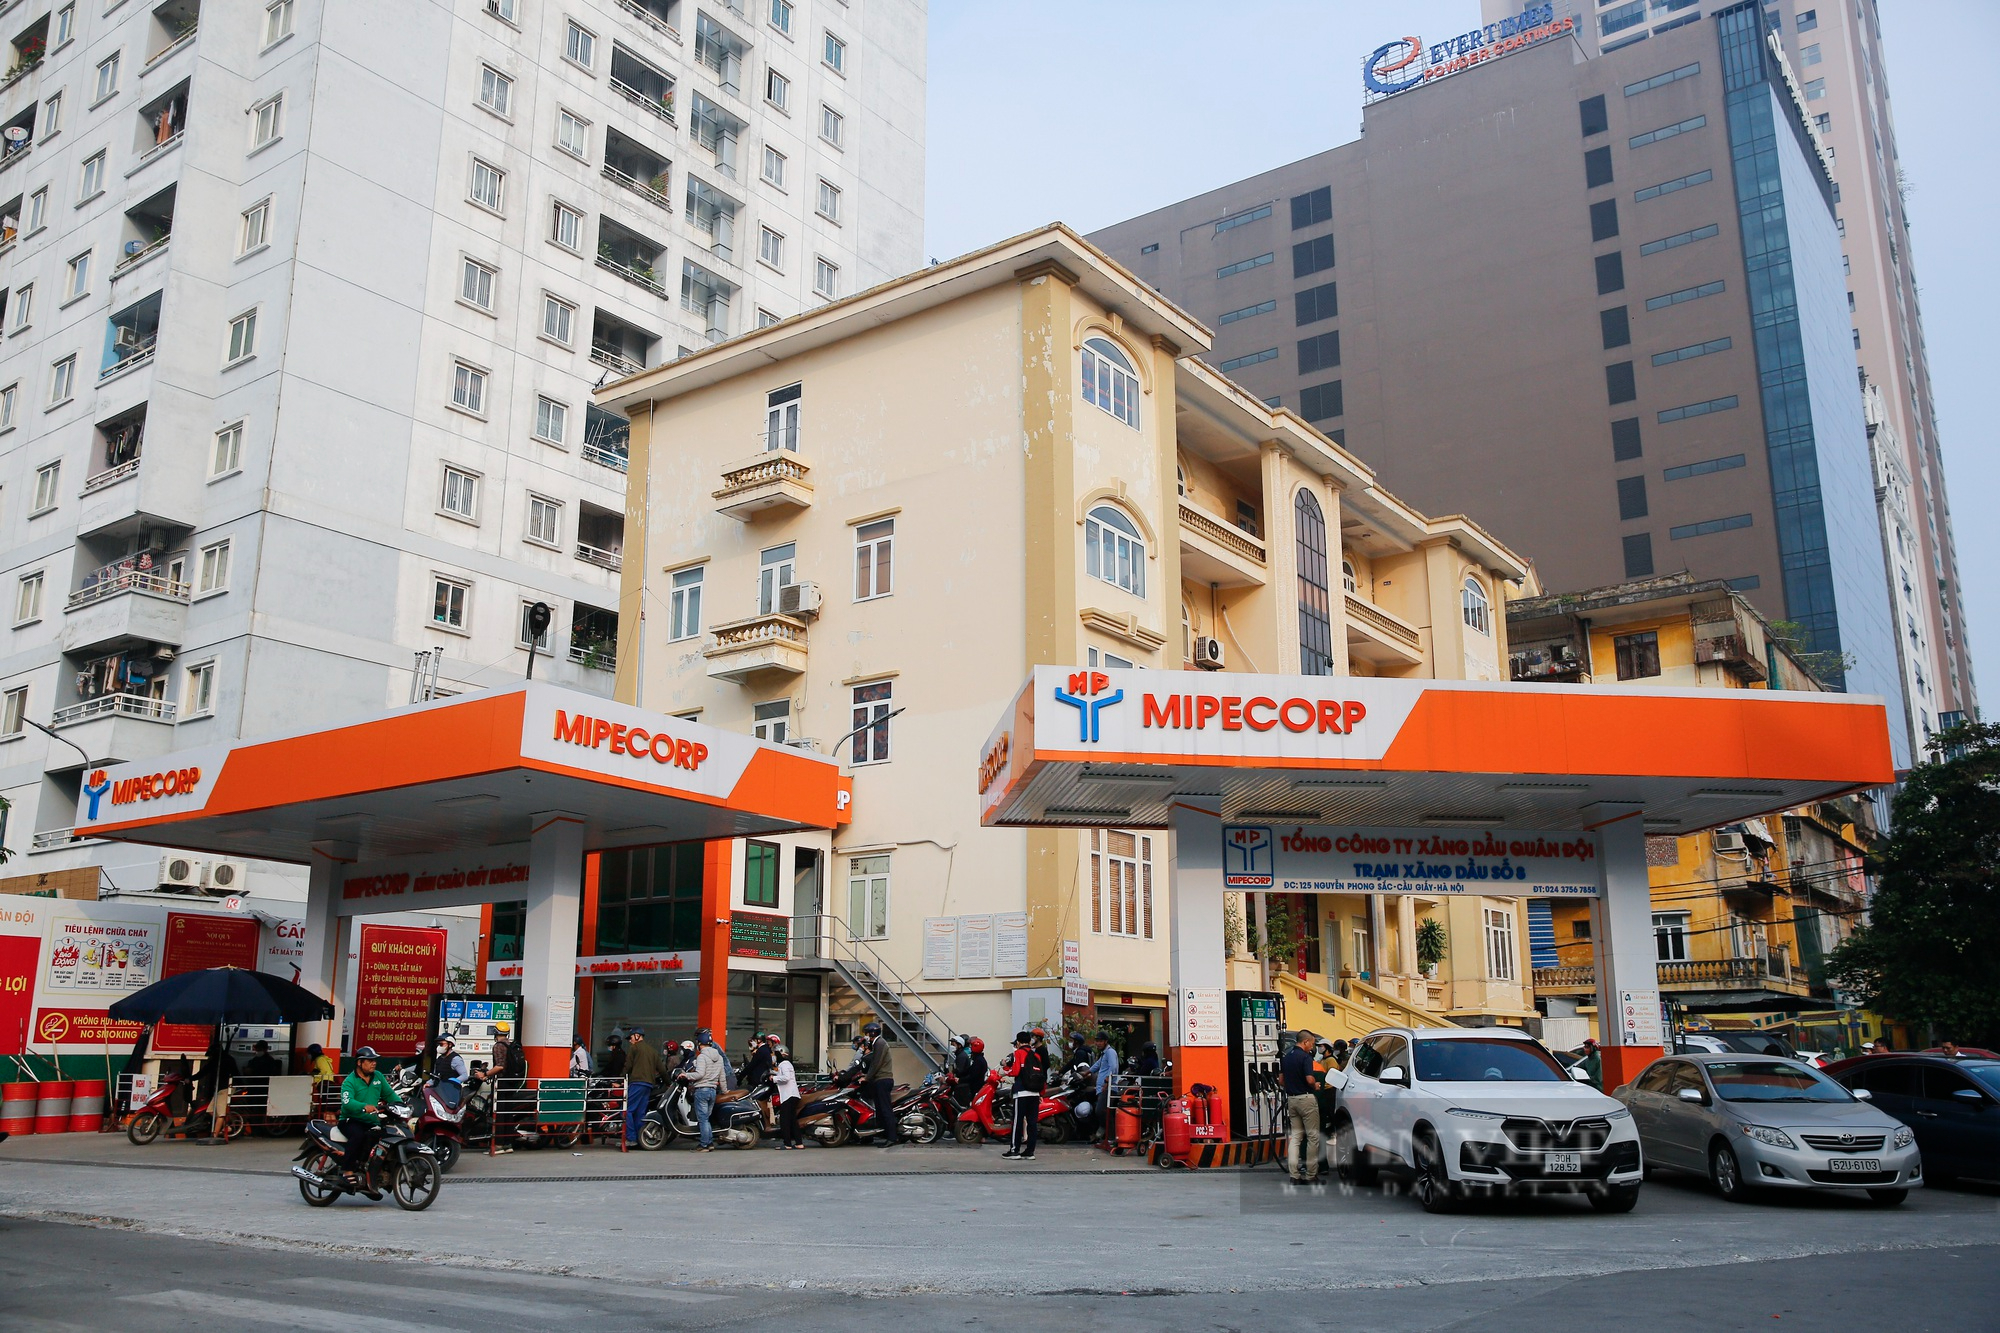 Nhiều cây xăng tại Hà Nội mở bán trở lại sau khi Bộ Công thương chỉ đạo “nóng” - Ảnh 2.